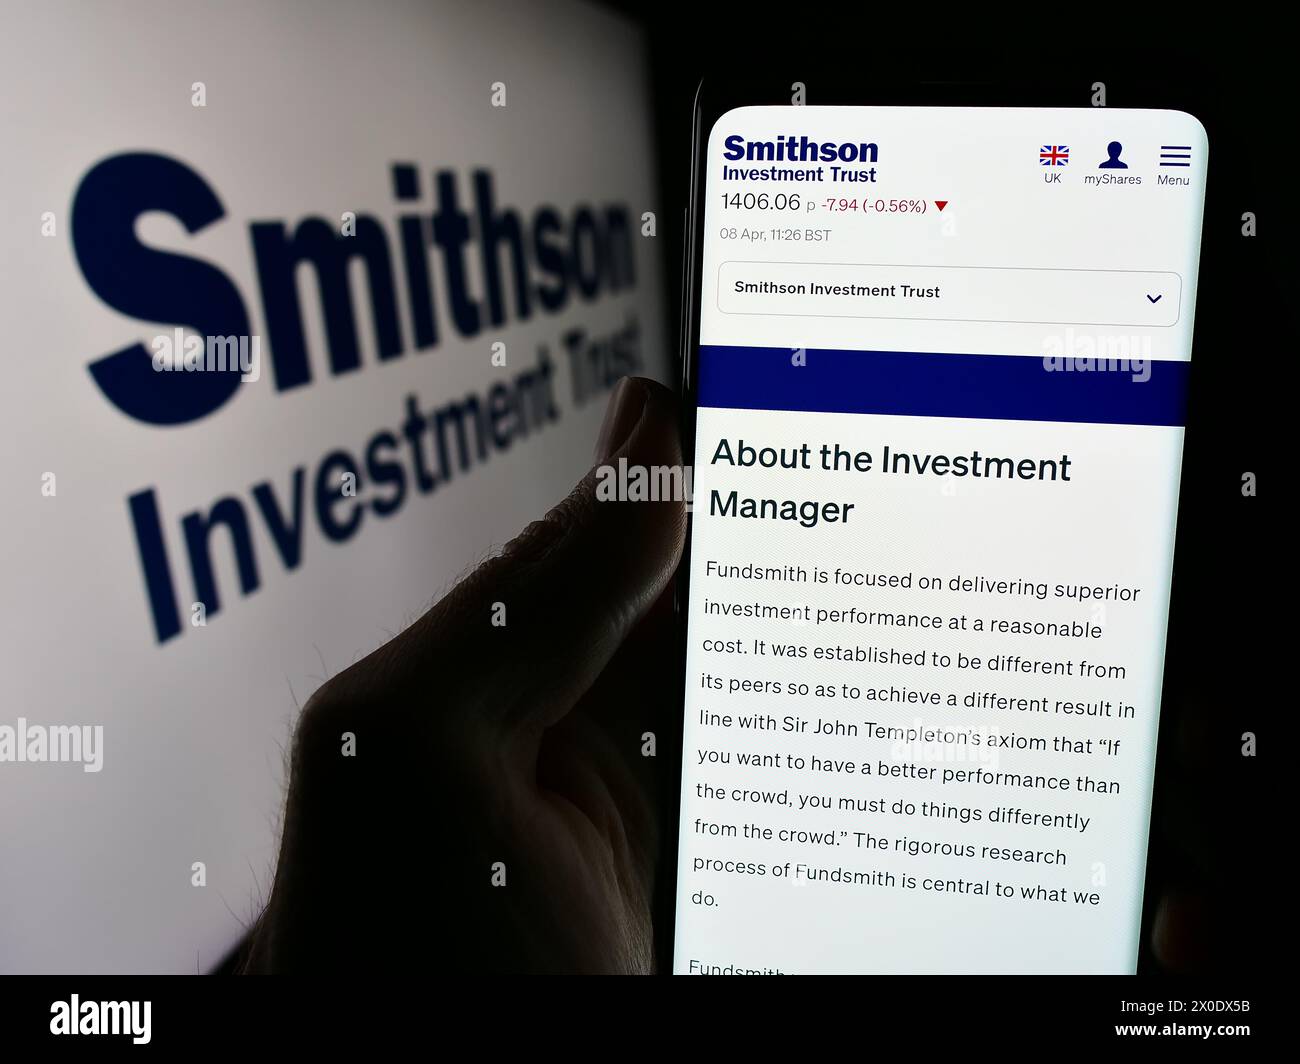 Persona che detiene un telefono cellulare con il sito web della società britannica Smithson Investment Trust plc davanti al logo. Messa a fuoco al centro del display del telefono. Foto Stock